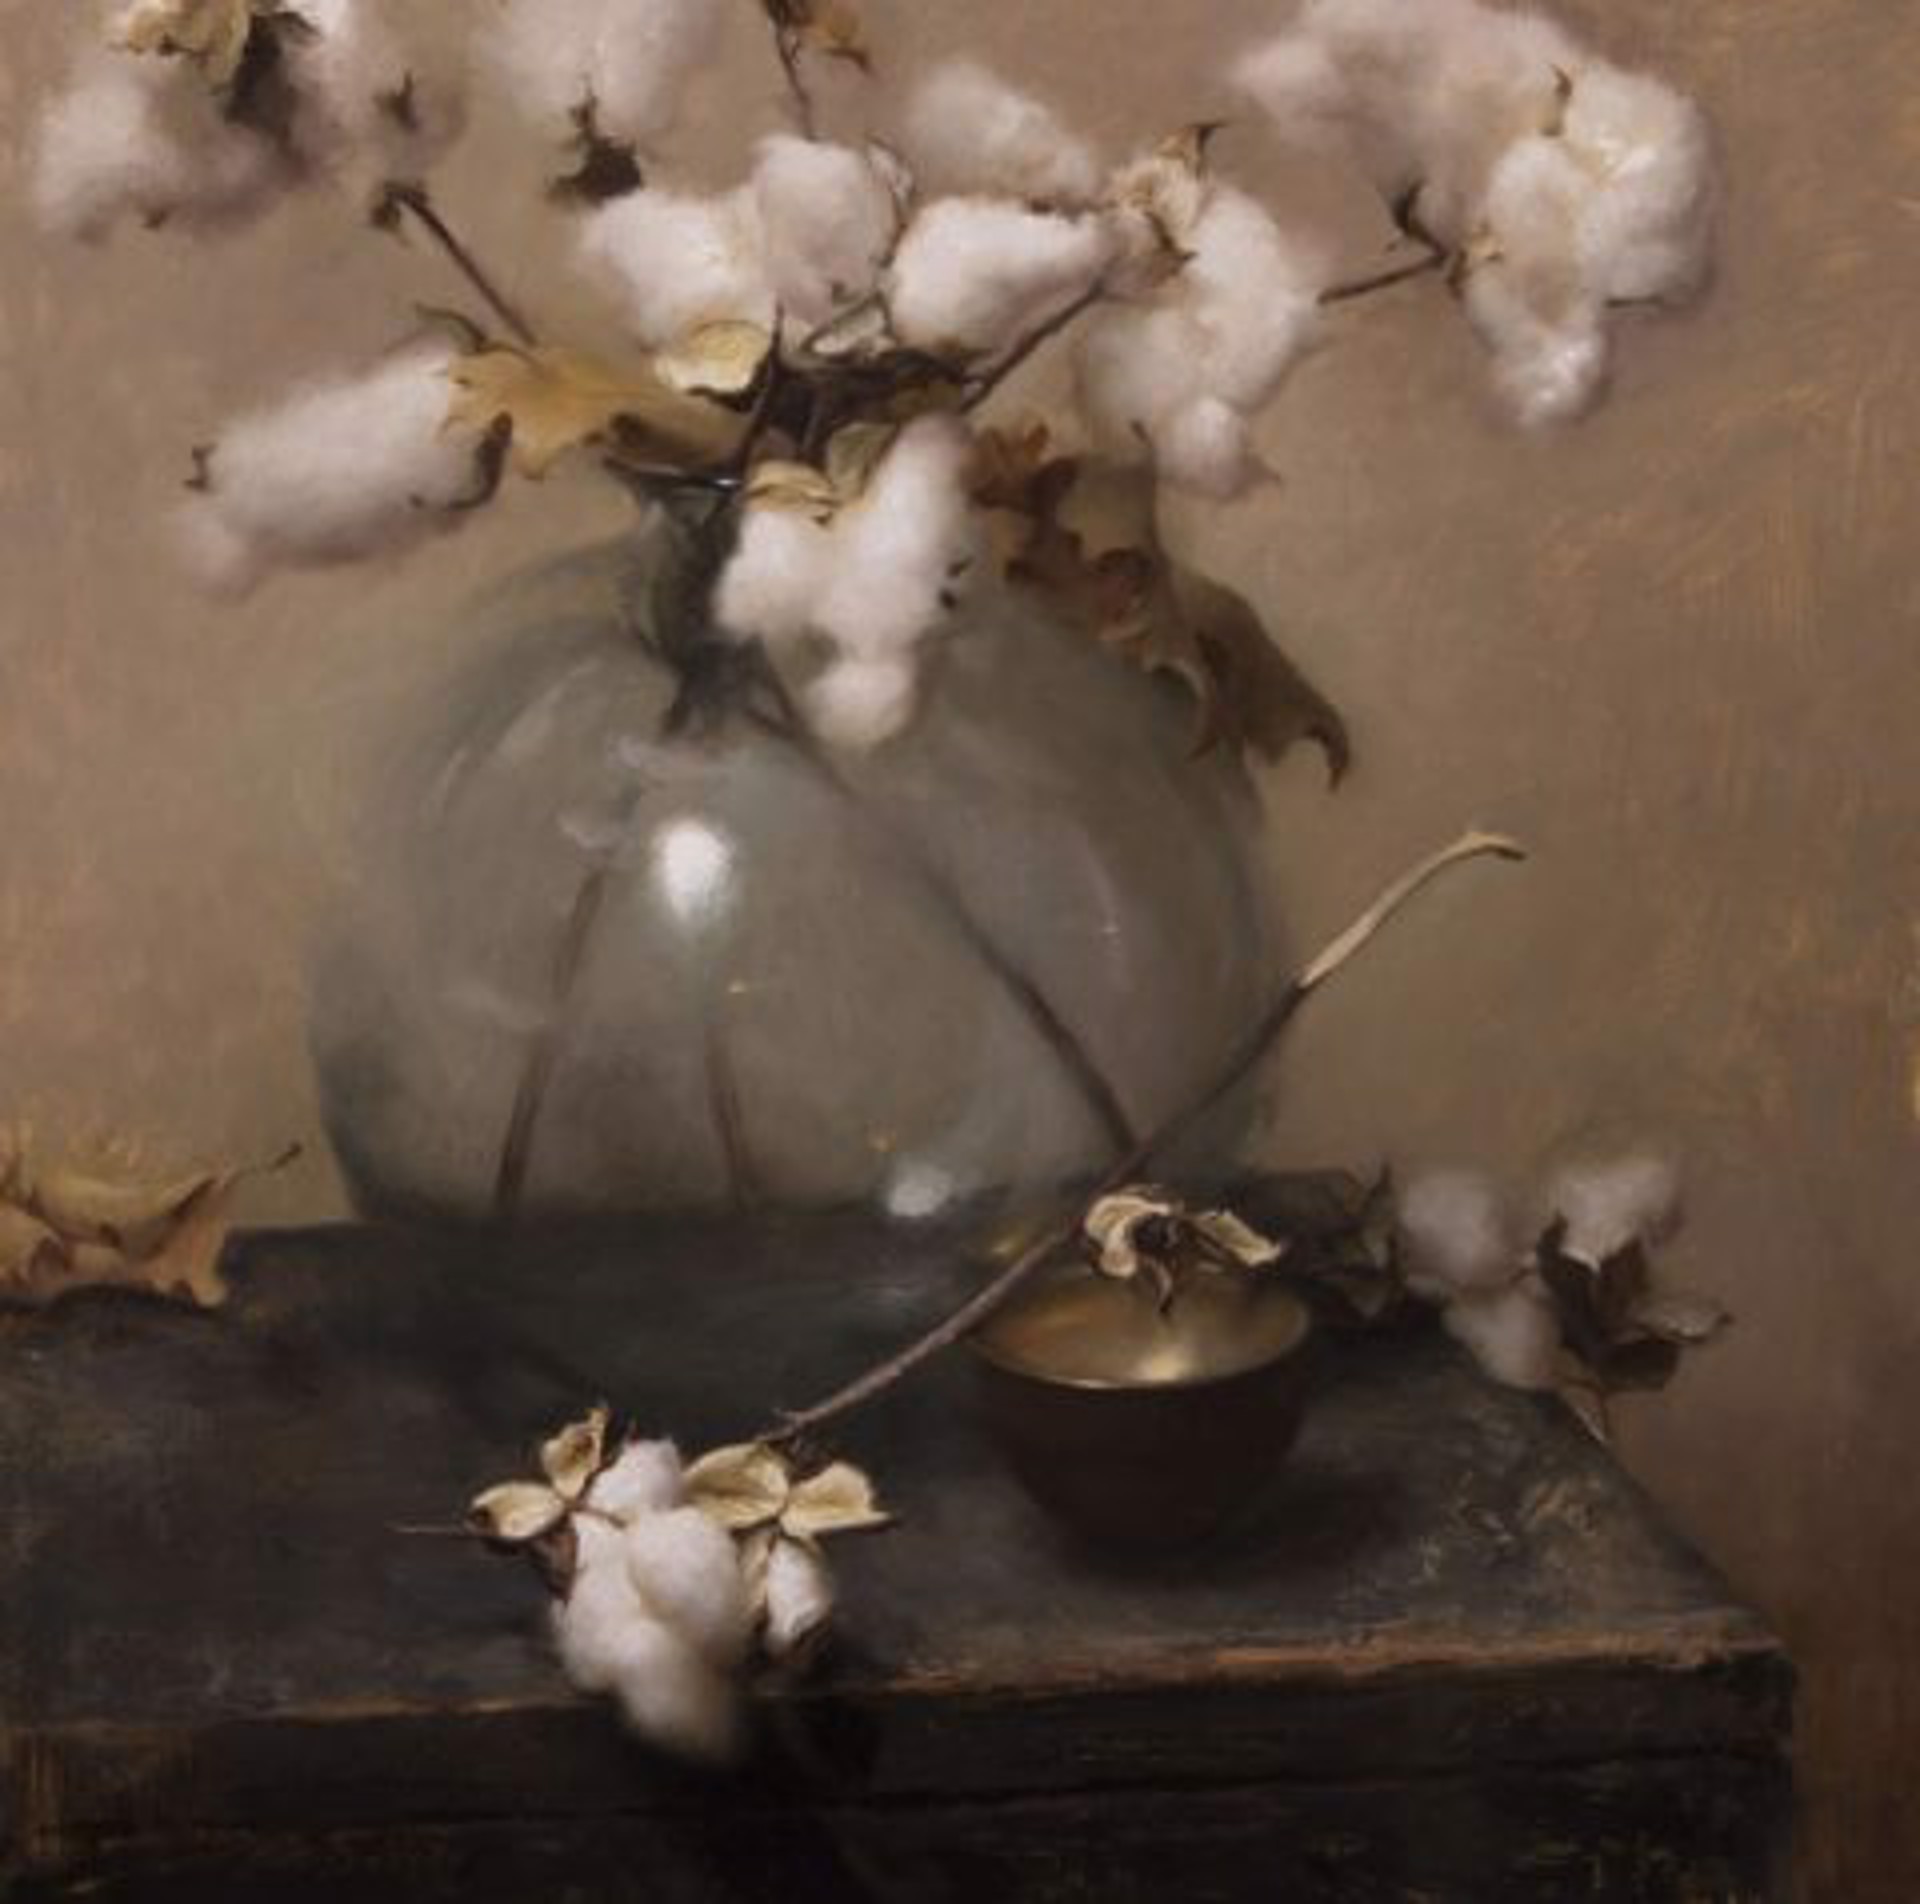 Cotton by Grace DeVito